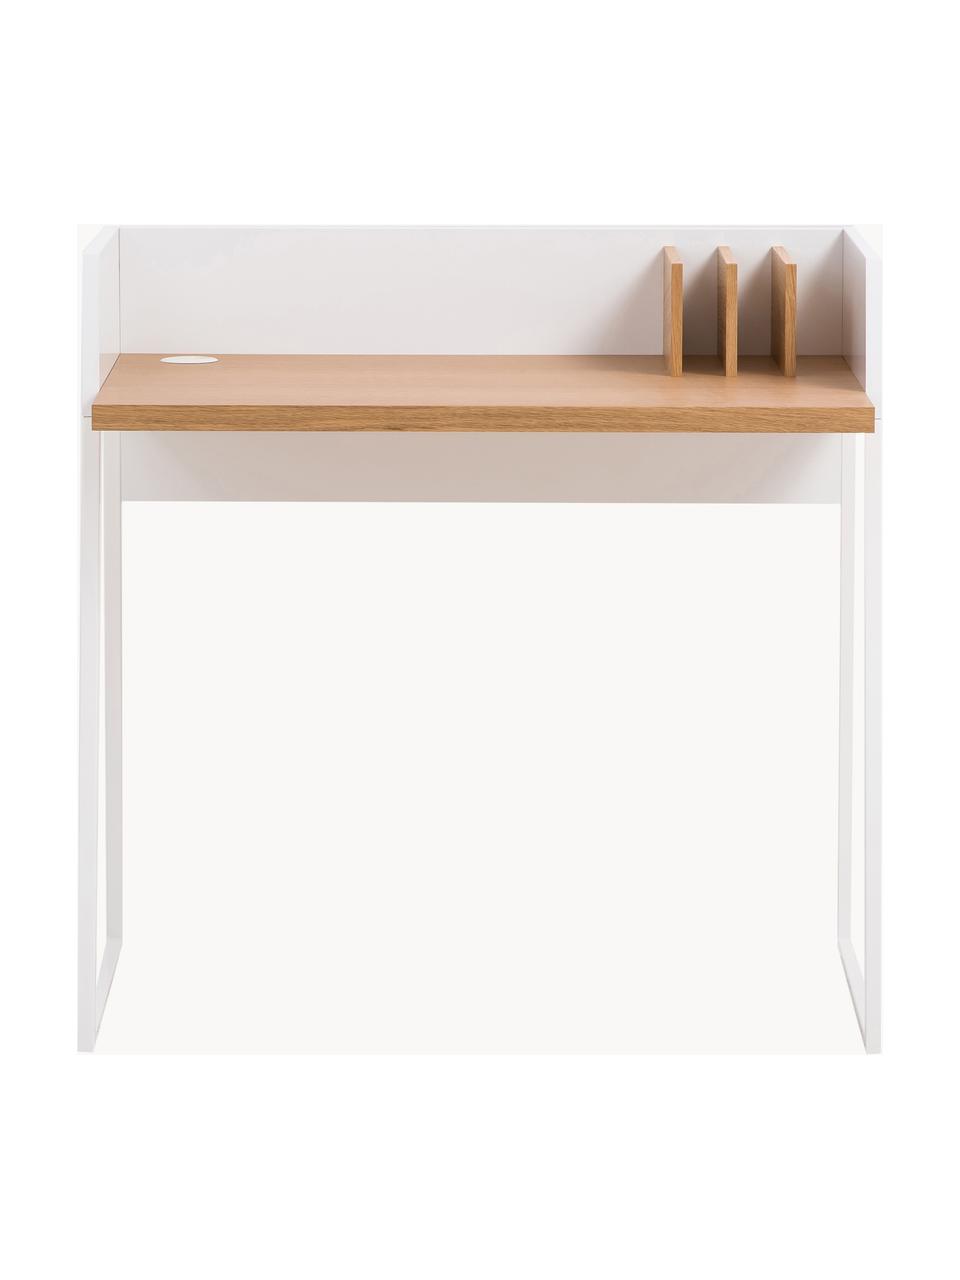 Malý psací stůl Camille, Dřevo, bíle lakované, Š 90 cm, H 60 cm